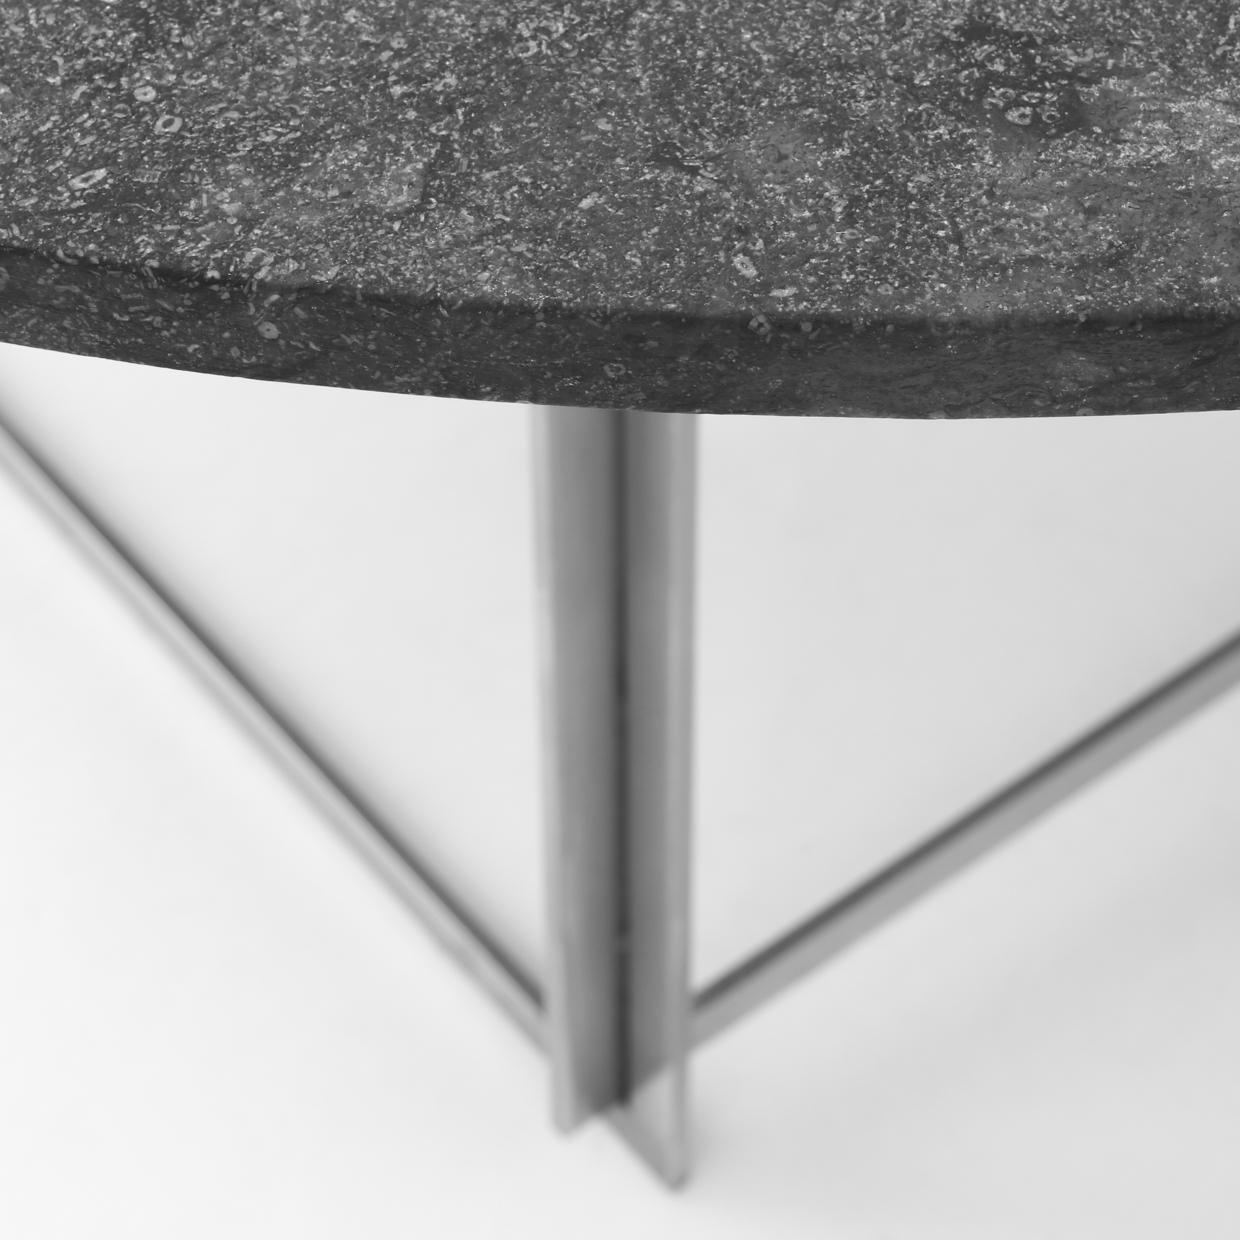 Poul Kjærholm PK 54 - Round dining table with matt chromed steel frame and Porsgrunn marble top. Design 1963. Maker E. Kold Christensen.